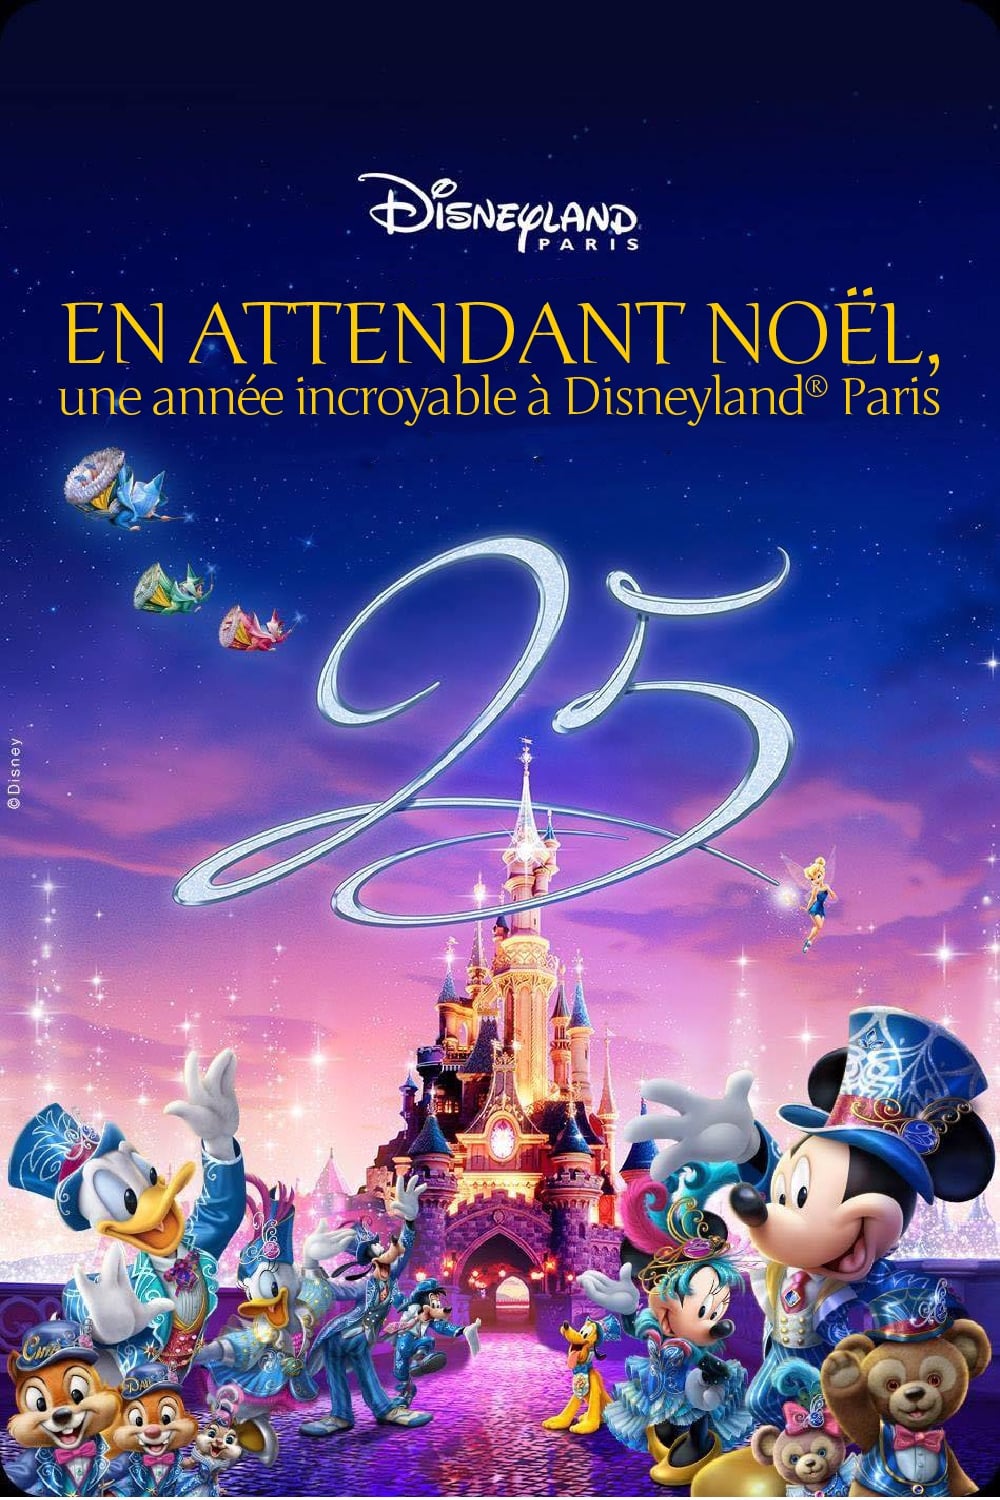 En attendant Noël, une année incroyable à Disneyland Paris